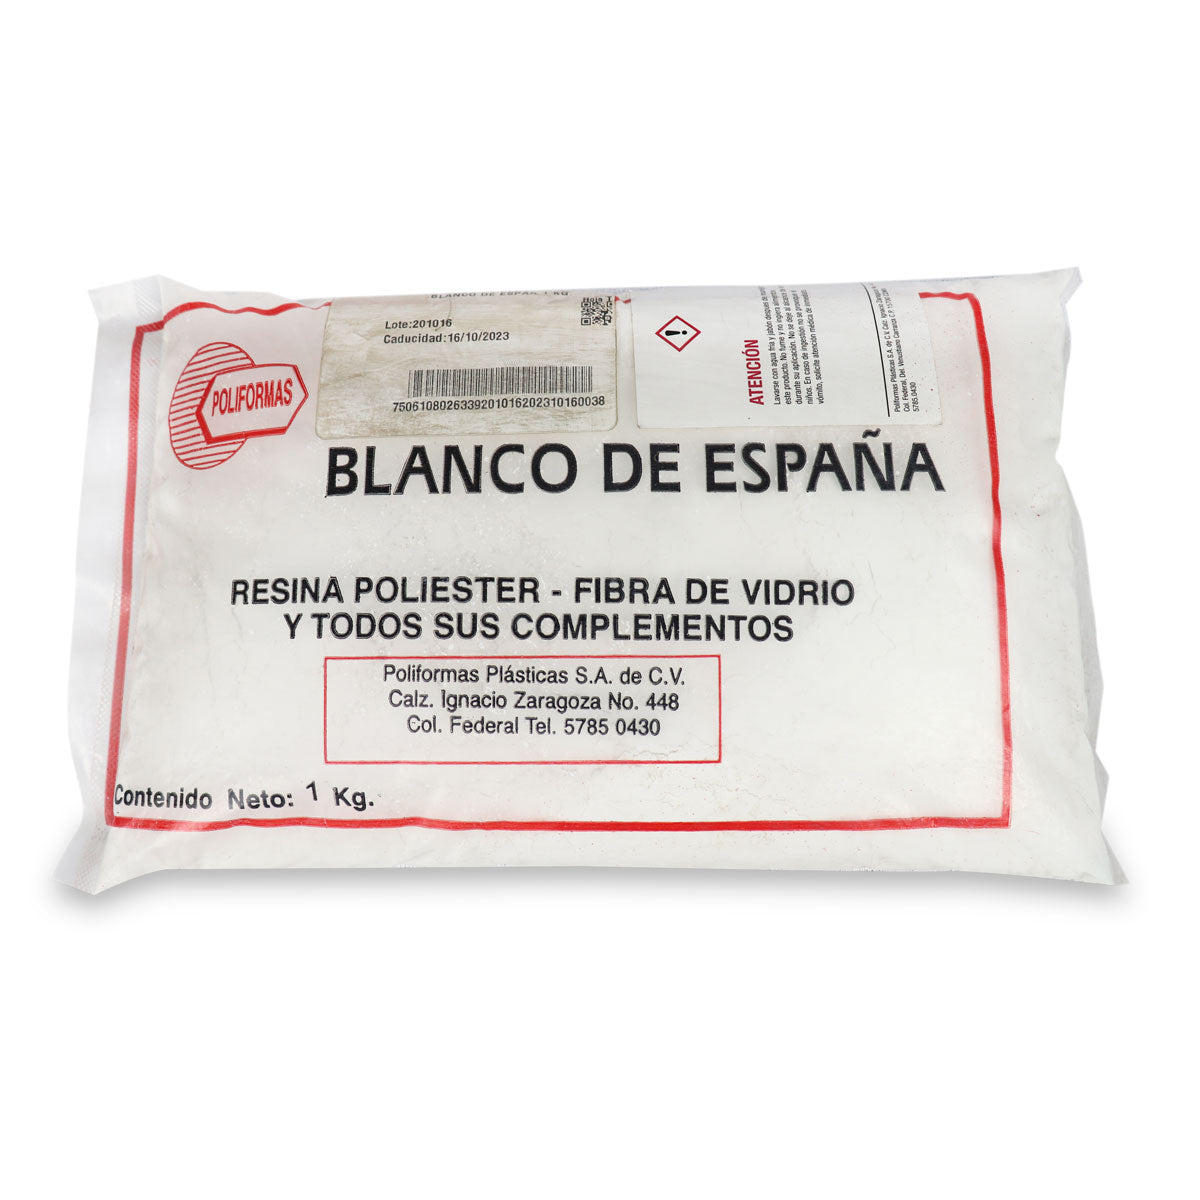 Blanco de España – POLIFORMAS PLÁSTICAS